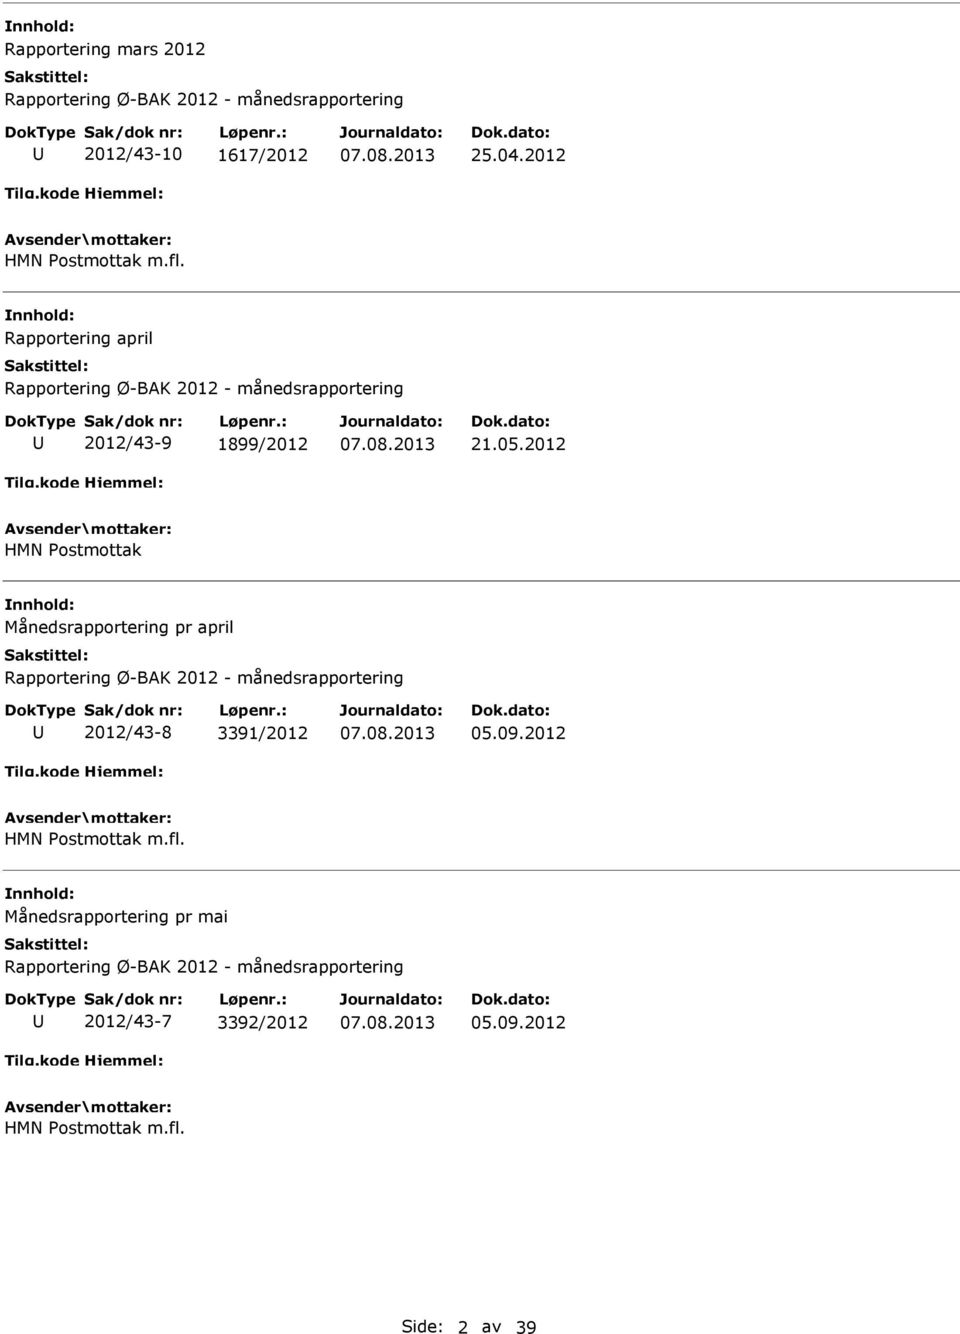 2012 HMN Postmottak Månedsrapportering pr april Rapportering Ø-BAK 2012 - månedsrapportering 2012/43-8 3391/2012 05.09.